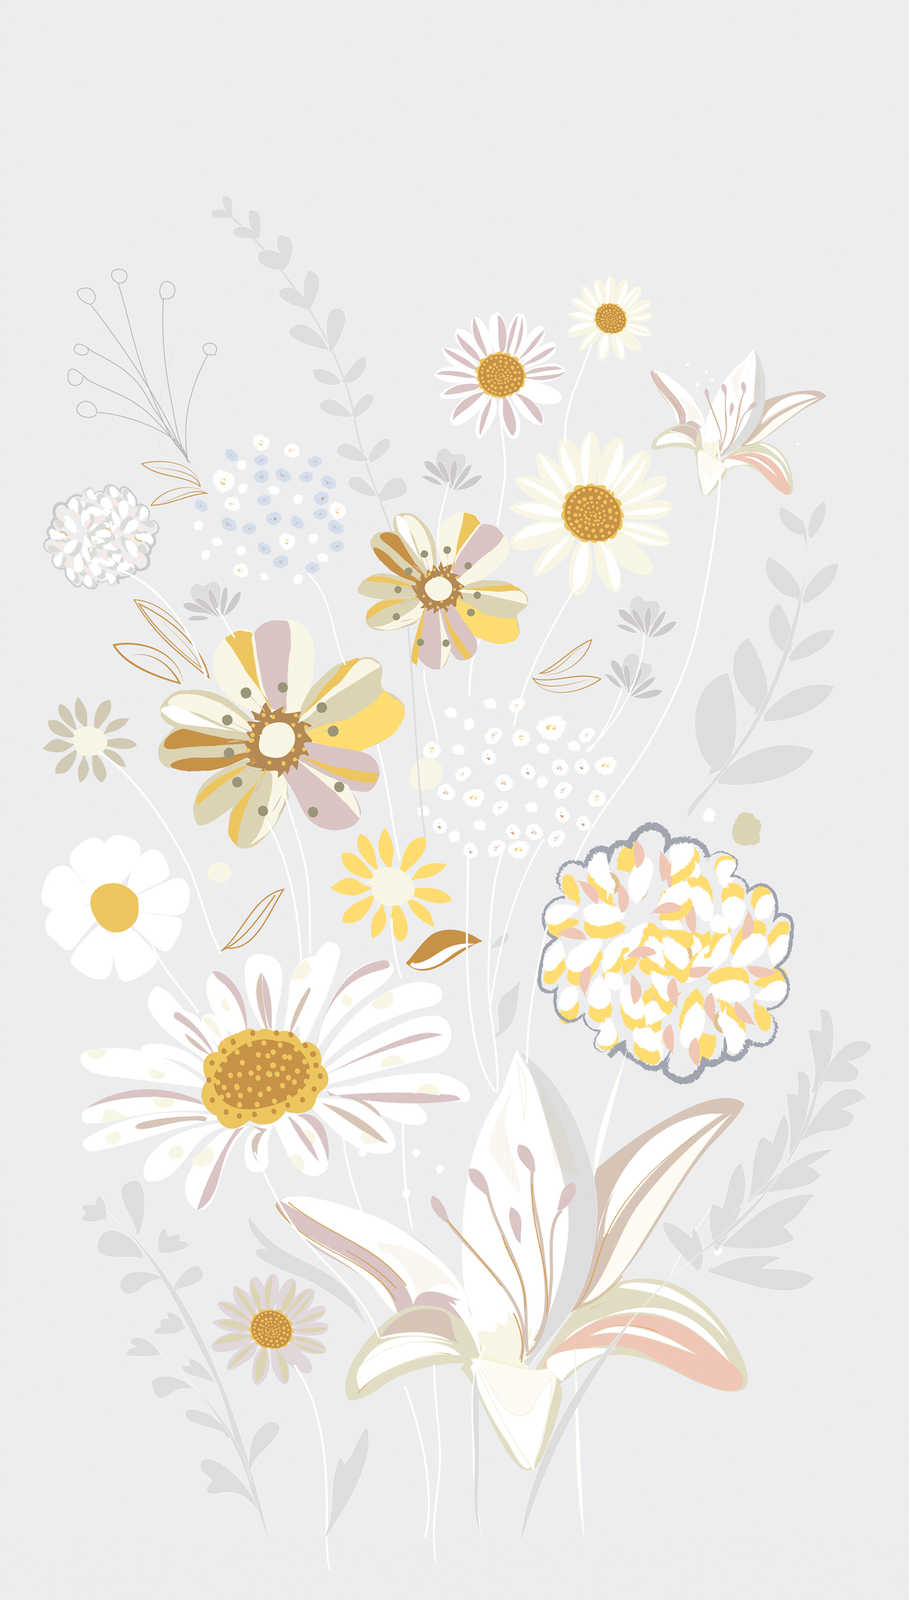             Bloemrijkpatroon behang met grassen in lichte kleuren - grijs, geel, beige
        